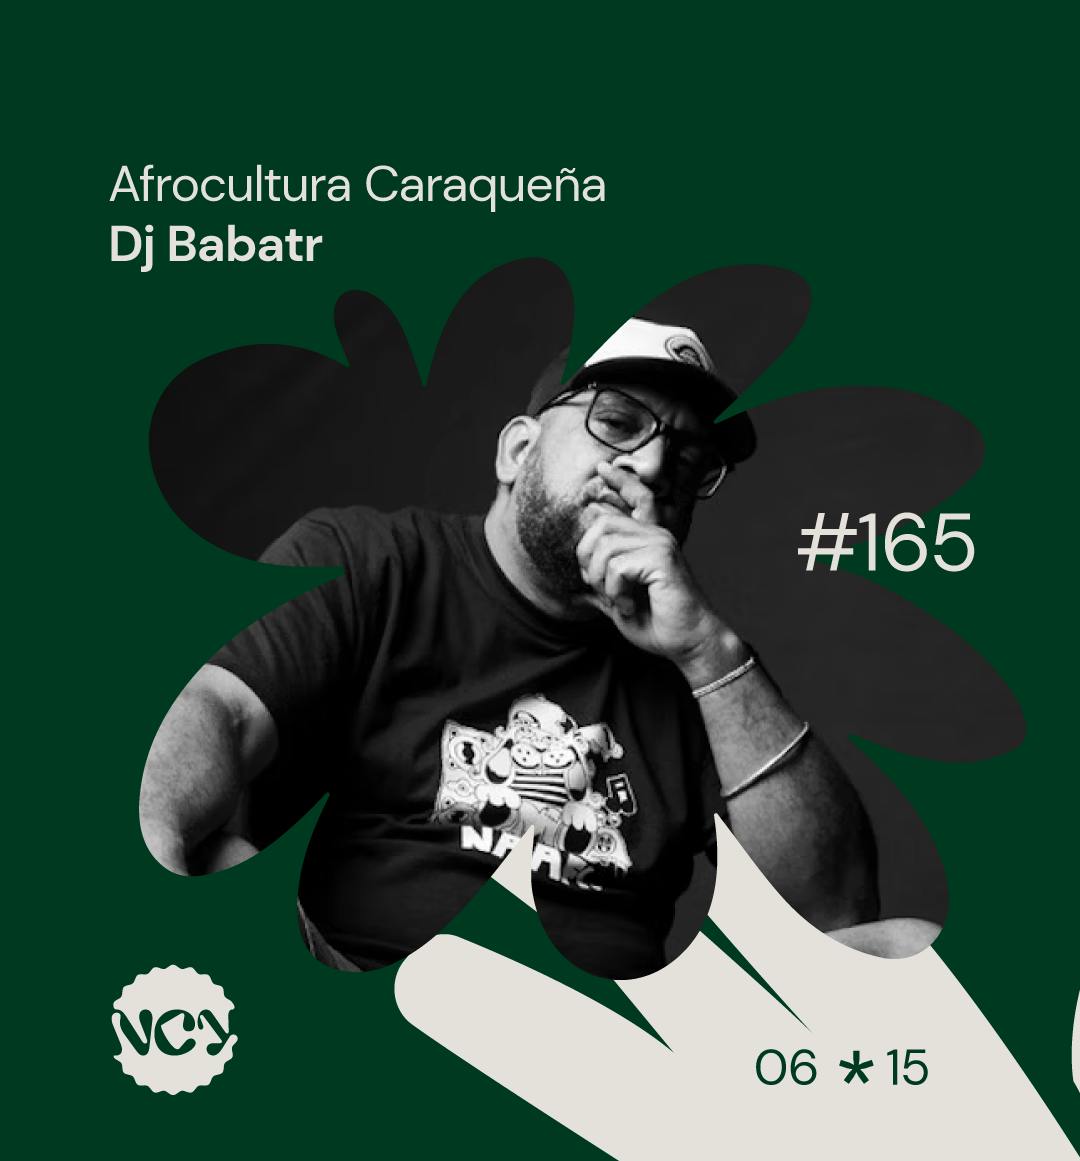 Episodio 165 | Afrocultura Caraqueña - Invitado: Dj Babatr